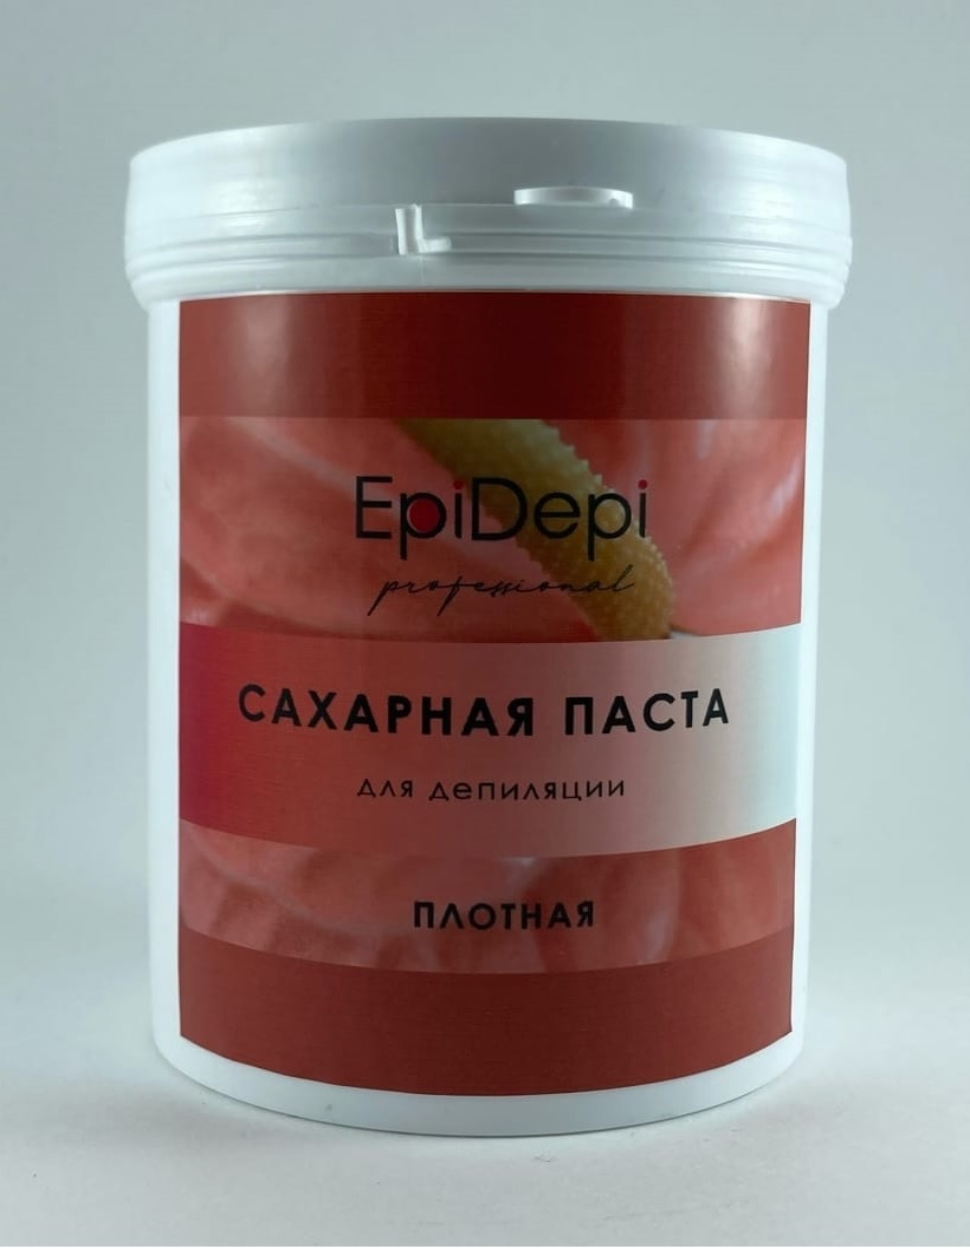 Сахарная паста «EpiDepi» 800 гр. (плотная).